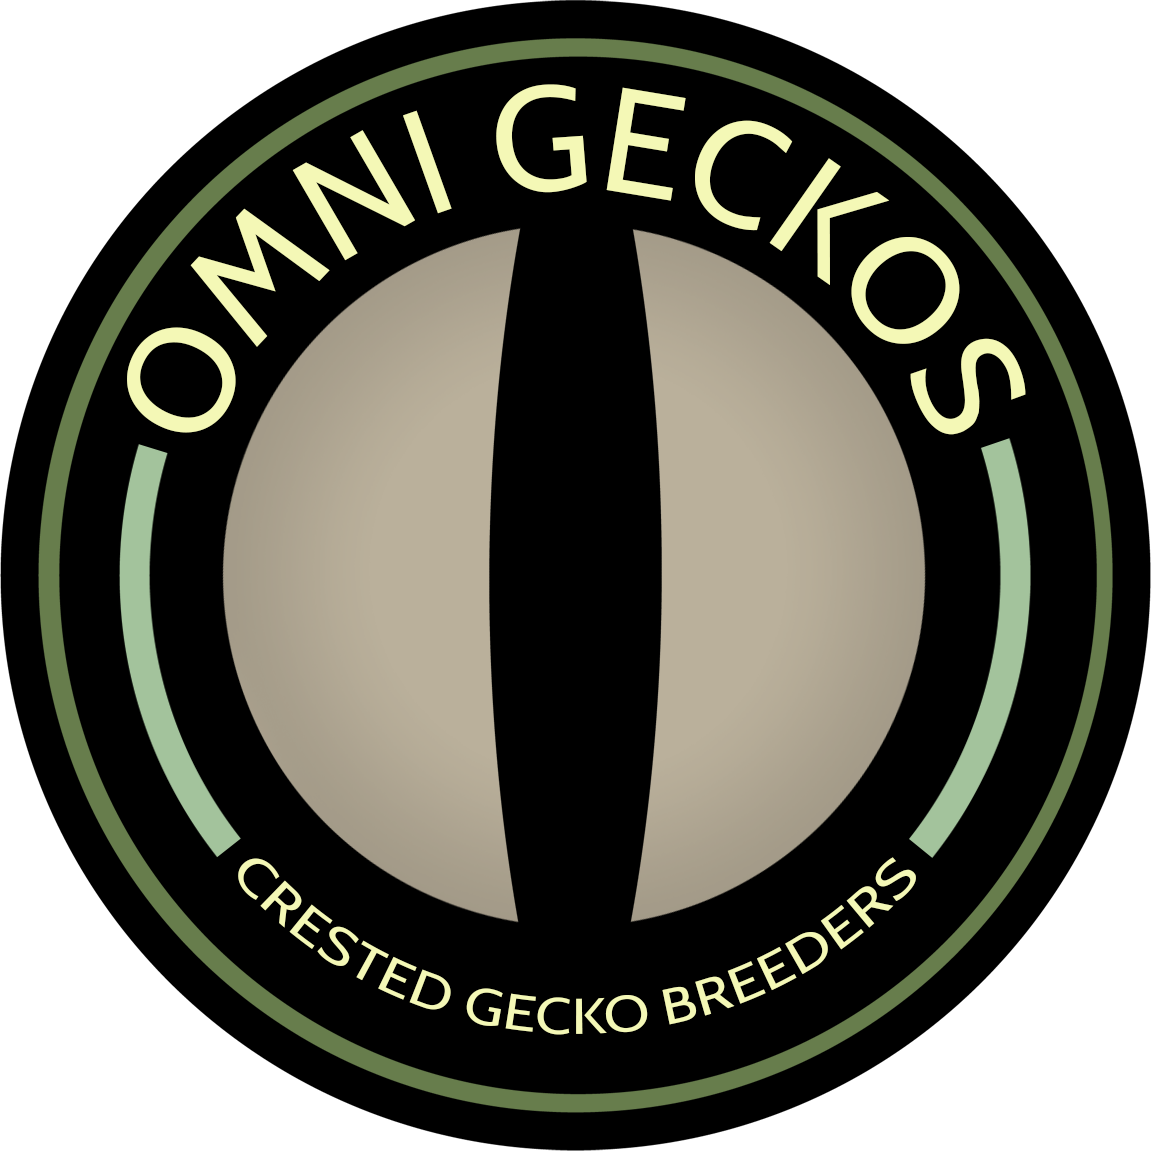 Omni Gecko